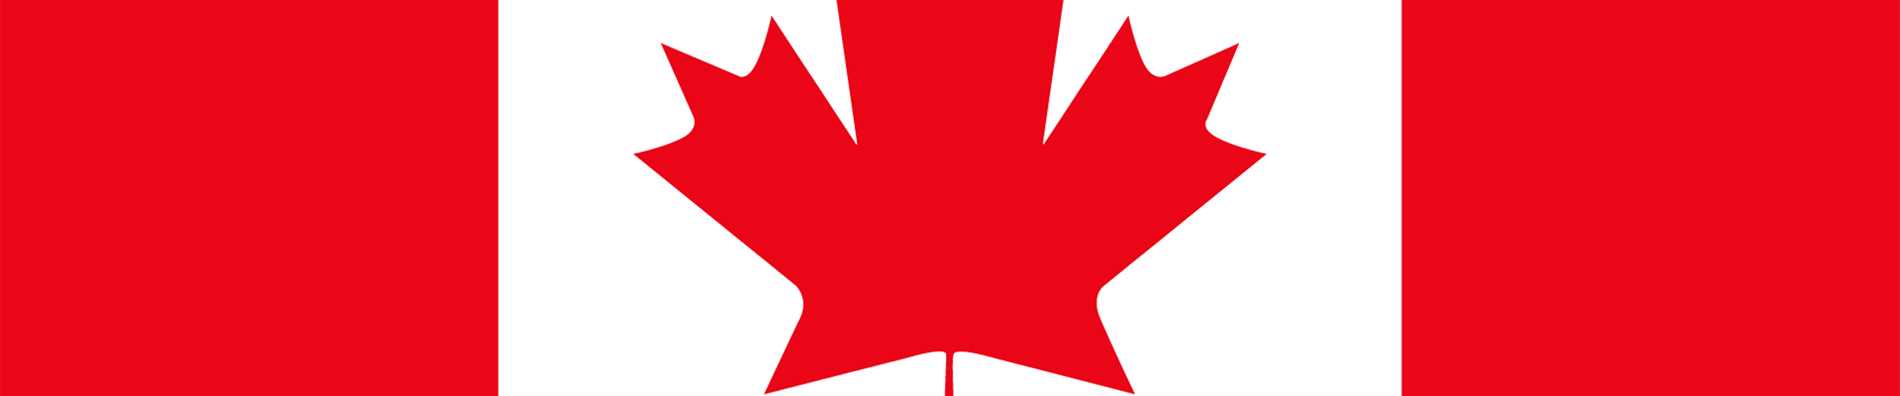 Le tiers supérieur du drapeau canadien